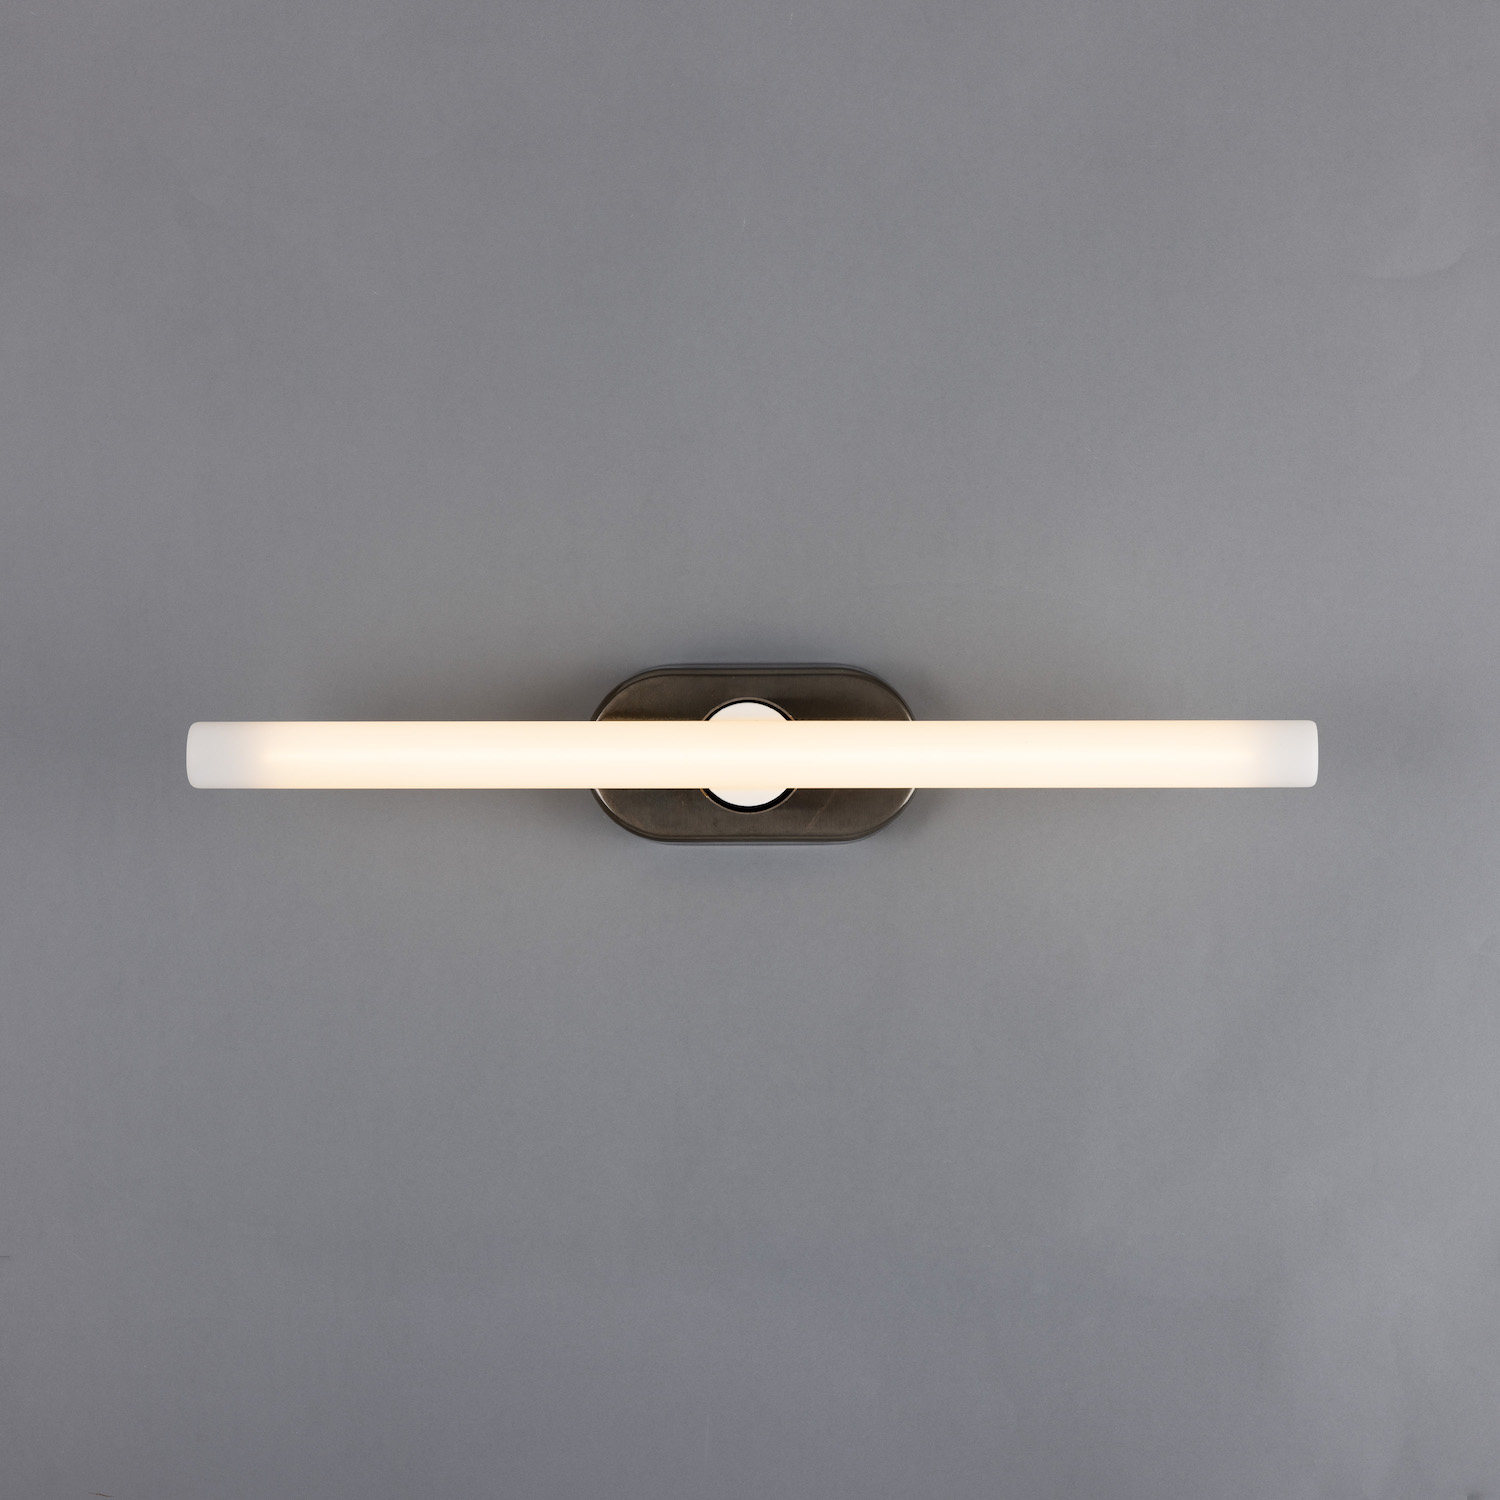 Minimalistische Wand- oder Spiegelleuchte aus Messing: Messing alt-silbern patiniert, Modell 2